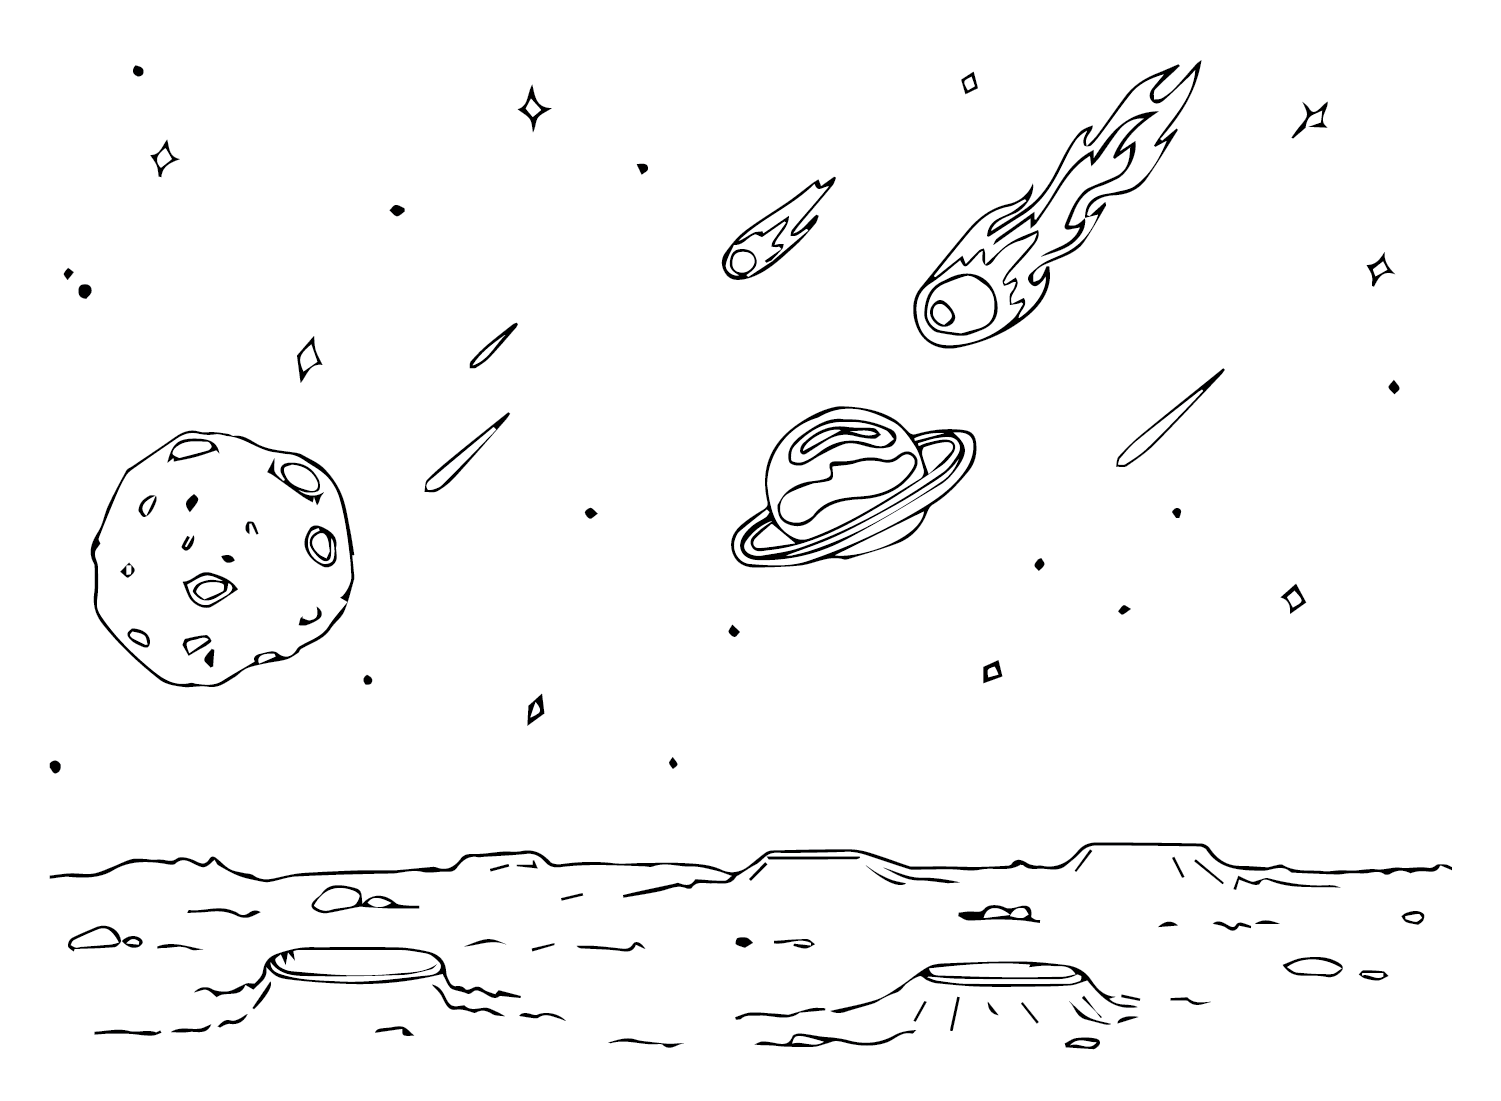 Asteroïdebeelden van Asteroïde